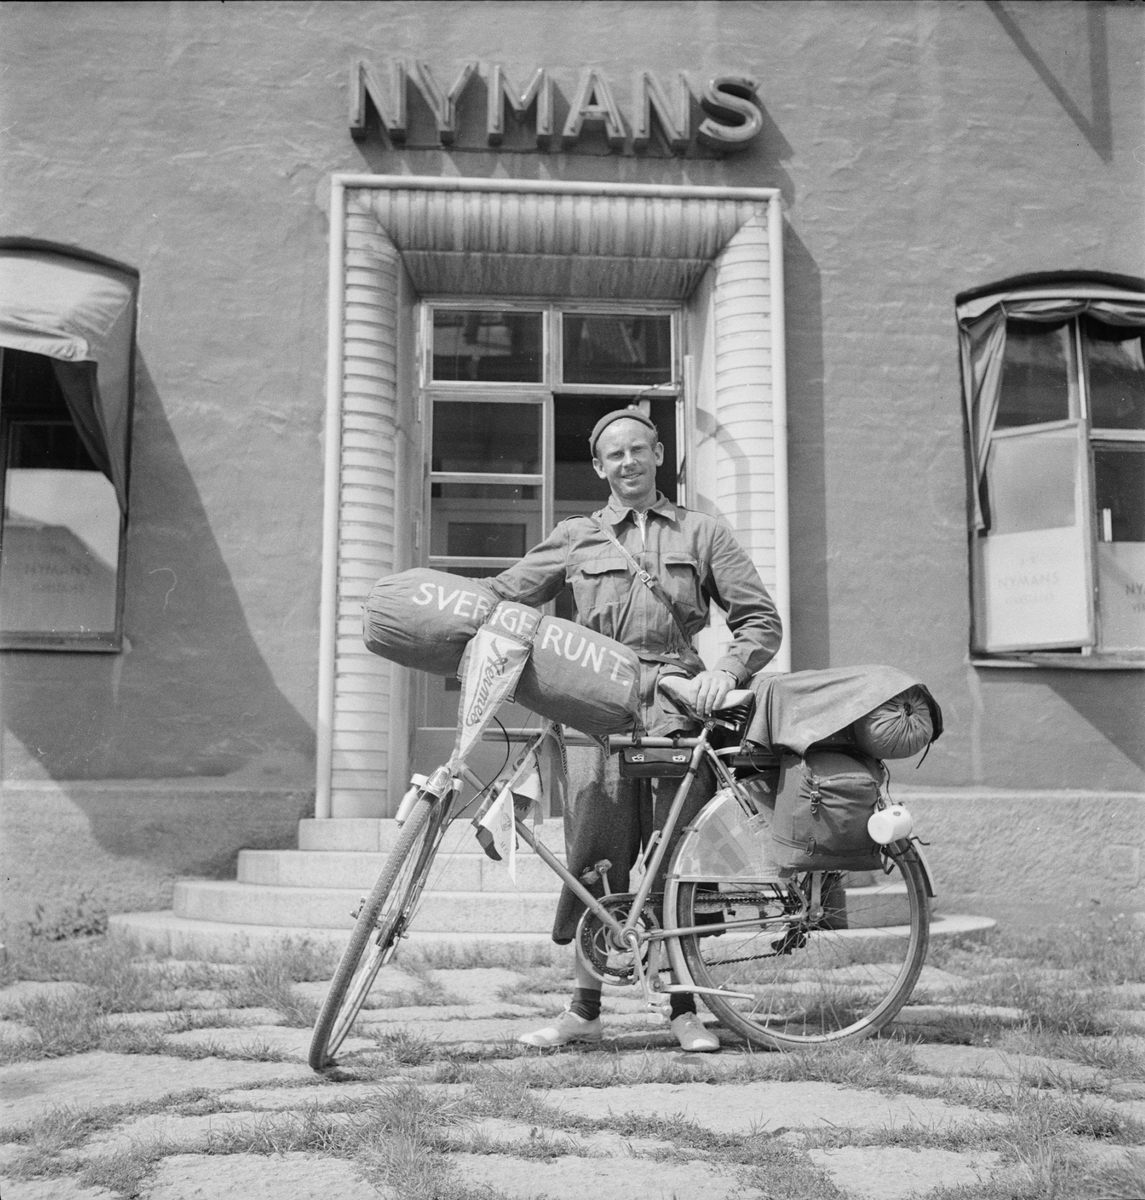 Nymans Verkstäder - Erik Berg från Västra Torup i Skåne med sin Hermescykel, Uppsala 1948